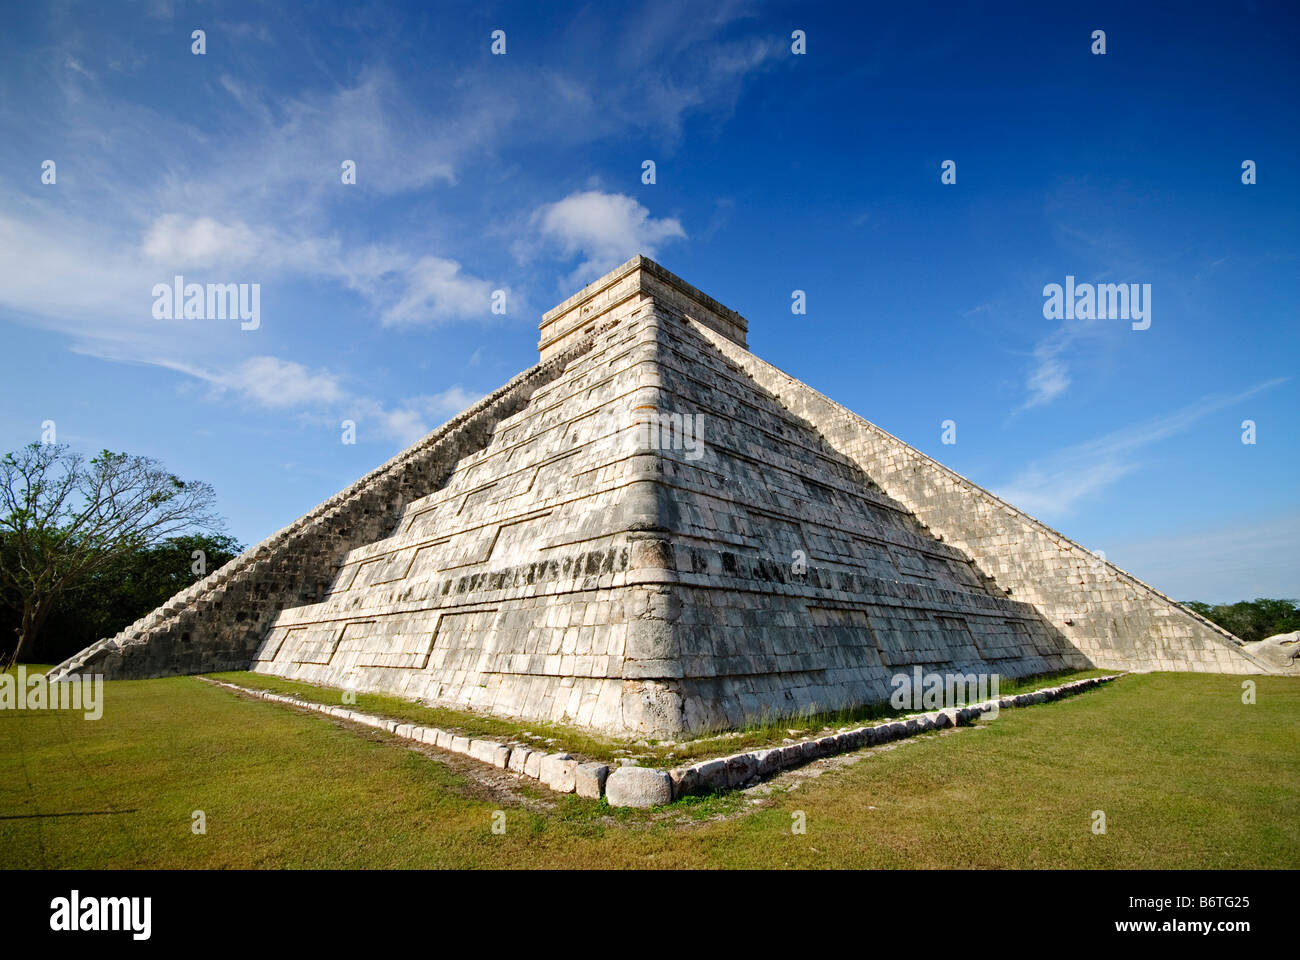 CHICHEN ITZA, Mexique - El Castillo (également connu sous le nom de Temple de Kuklcan) aux ruines mayas anciennes de Chichen Itza, Yucatan, Mexique. 081216092810 1931x.tif. Chichen Itza, situé sur la péninsule du Yucatan au Mexique, est un site archéologique important présentant la riche histoire et les connaissances scientifiques avancées de la civilisation maya antique. Il est plus connu pour la Pyramide Kukulkan, ou « El Castillo », une structure à quatre côtés avec 91 marches de chaque côté, culminant en une seule étape au sommet pour représenter les 365 jours de l'année solaire. Banque D'Images